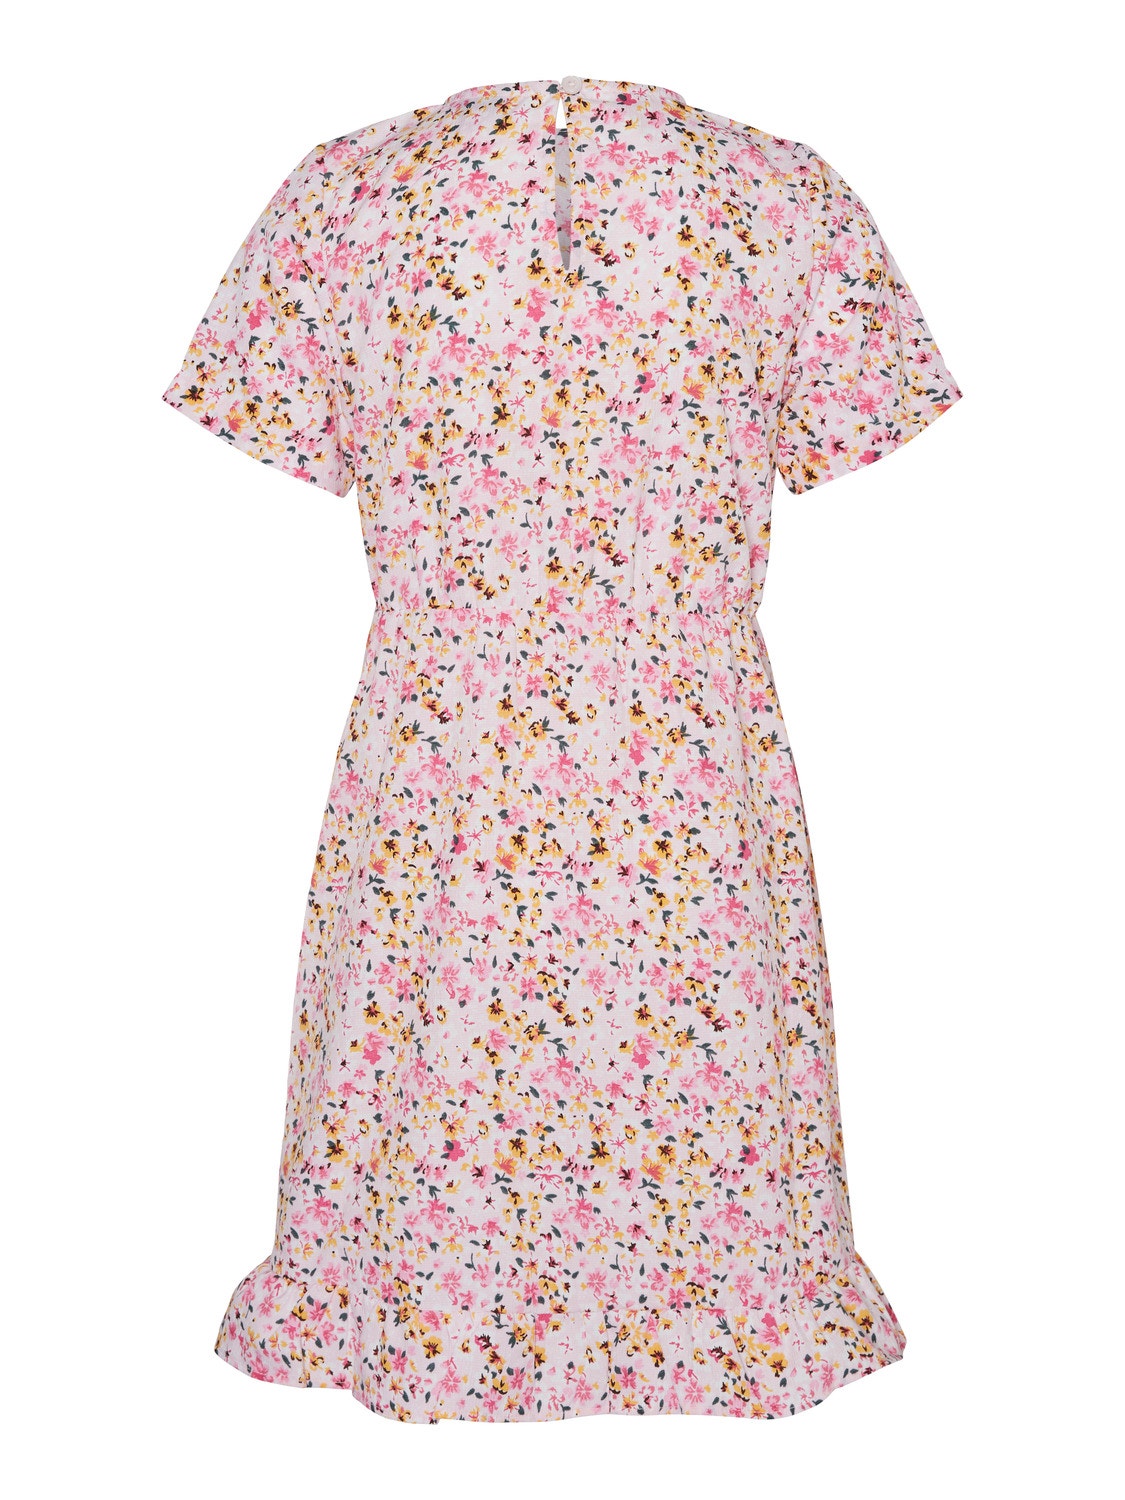 Vero Moda VMBLANCA Kort kjole -Parfait Pink - 10287397